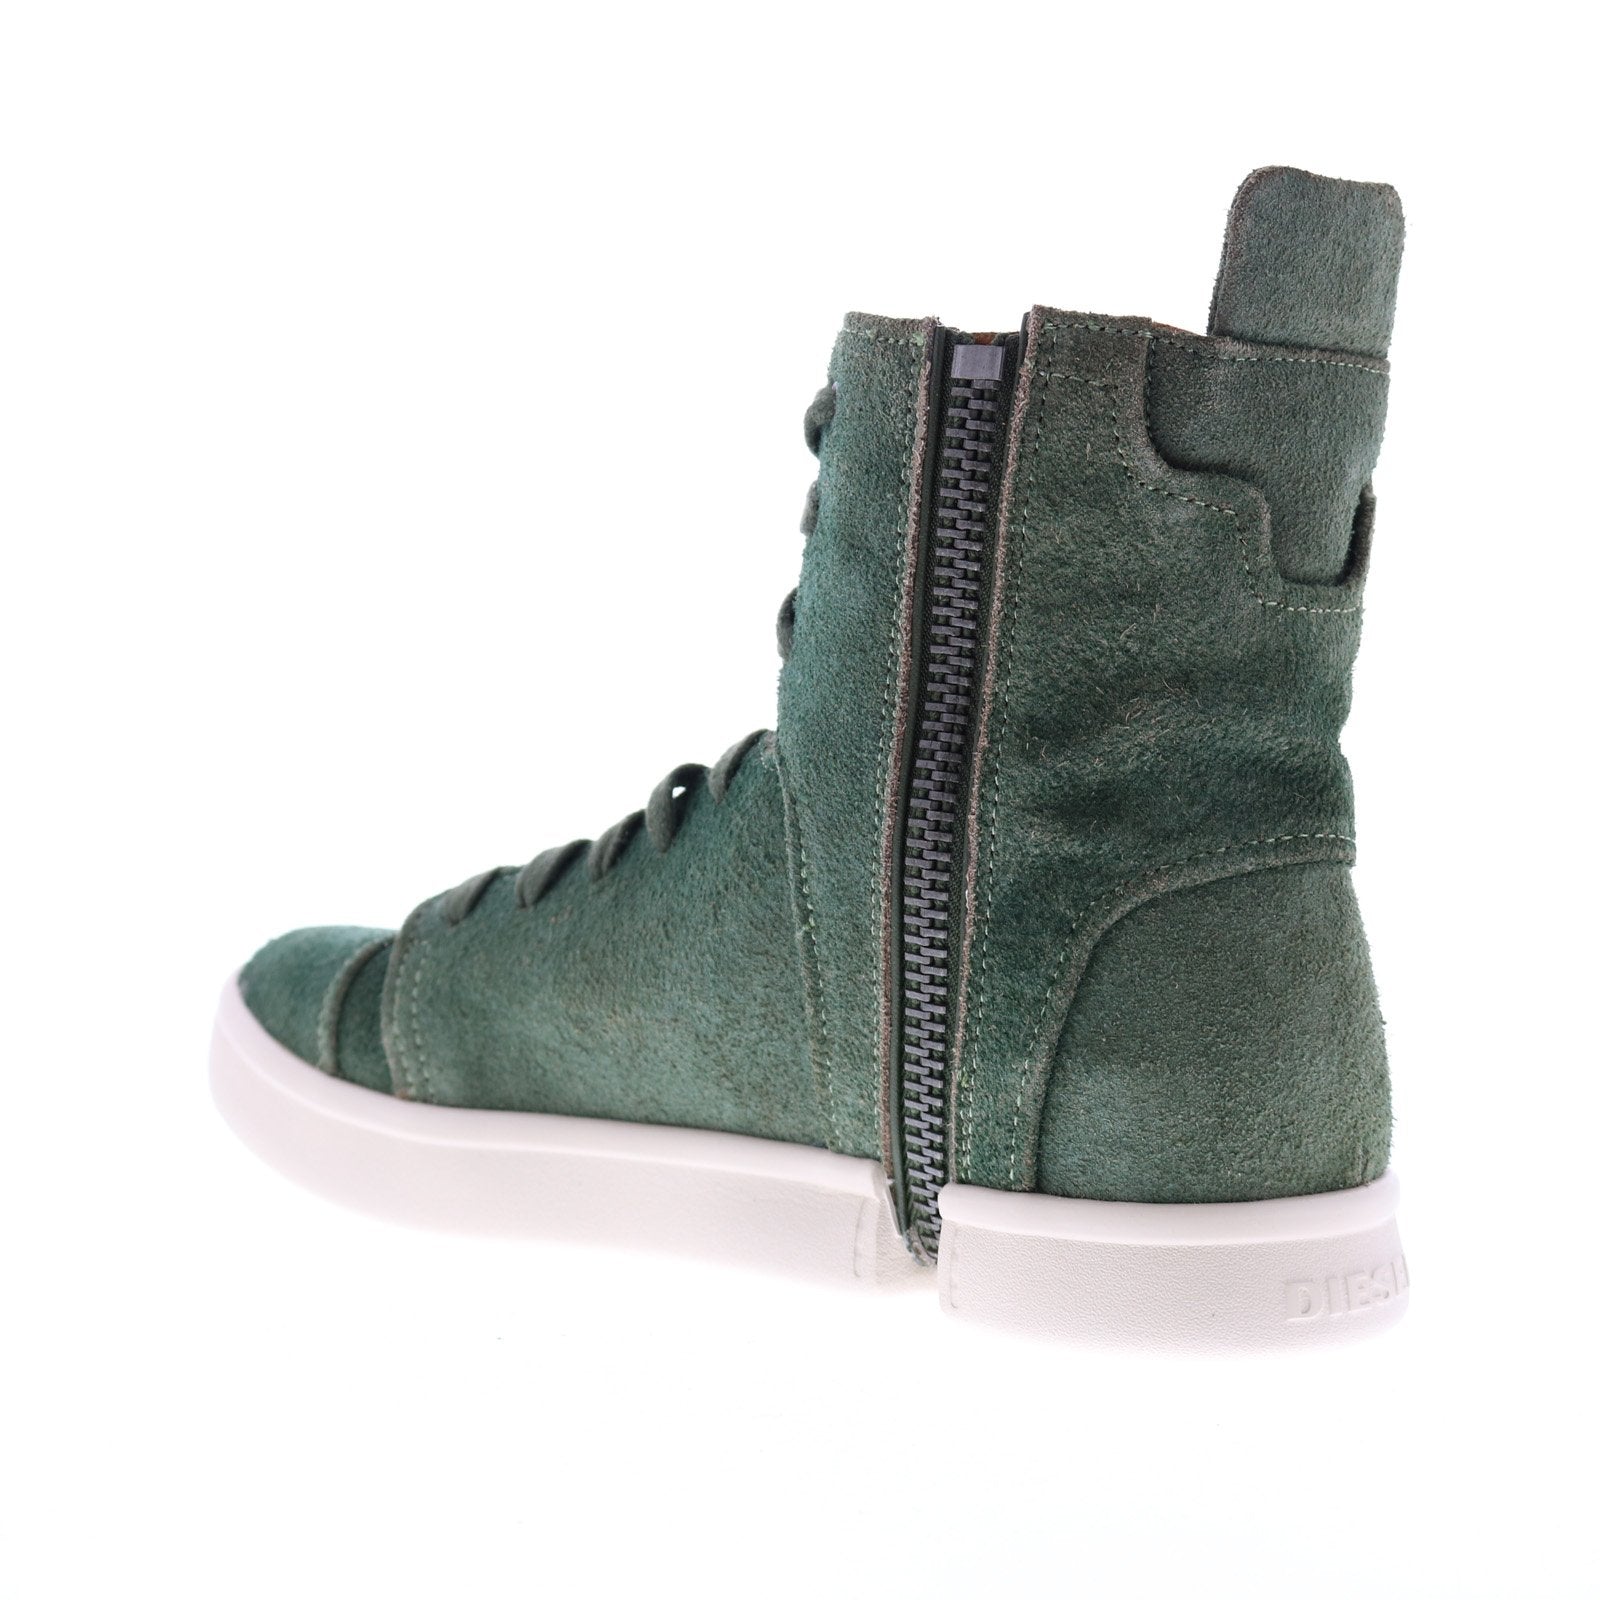 s.Oliver men leather sneaker khaki green 5-5-13667-20-701, 79,95 €